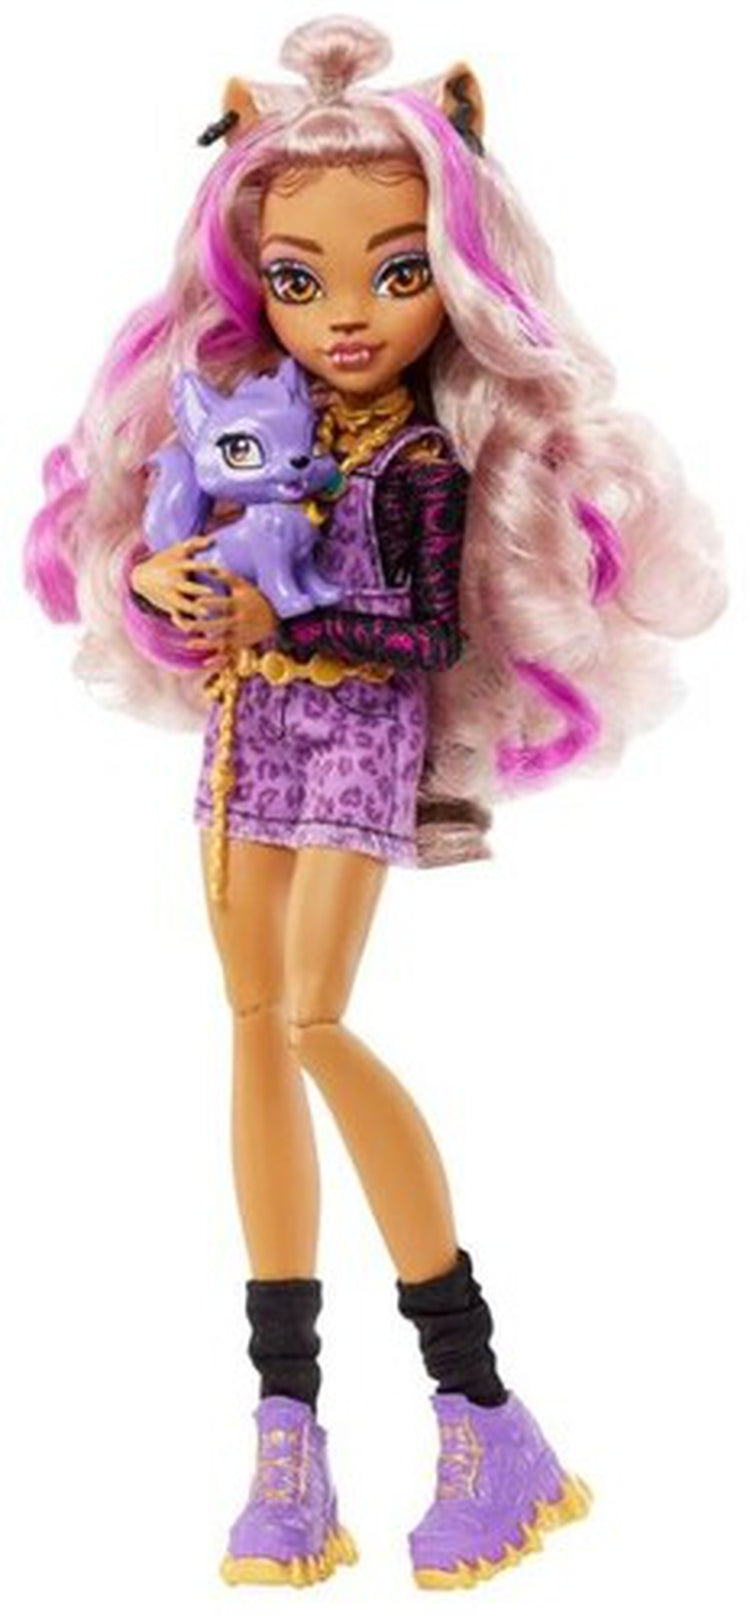 Mattel - Monster High Clawdeen Wolf Doll